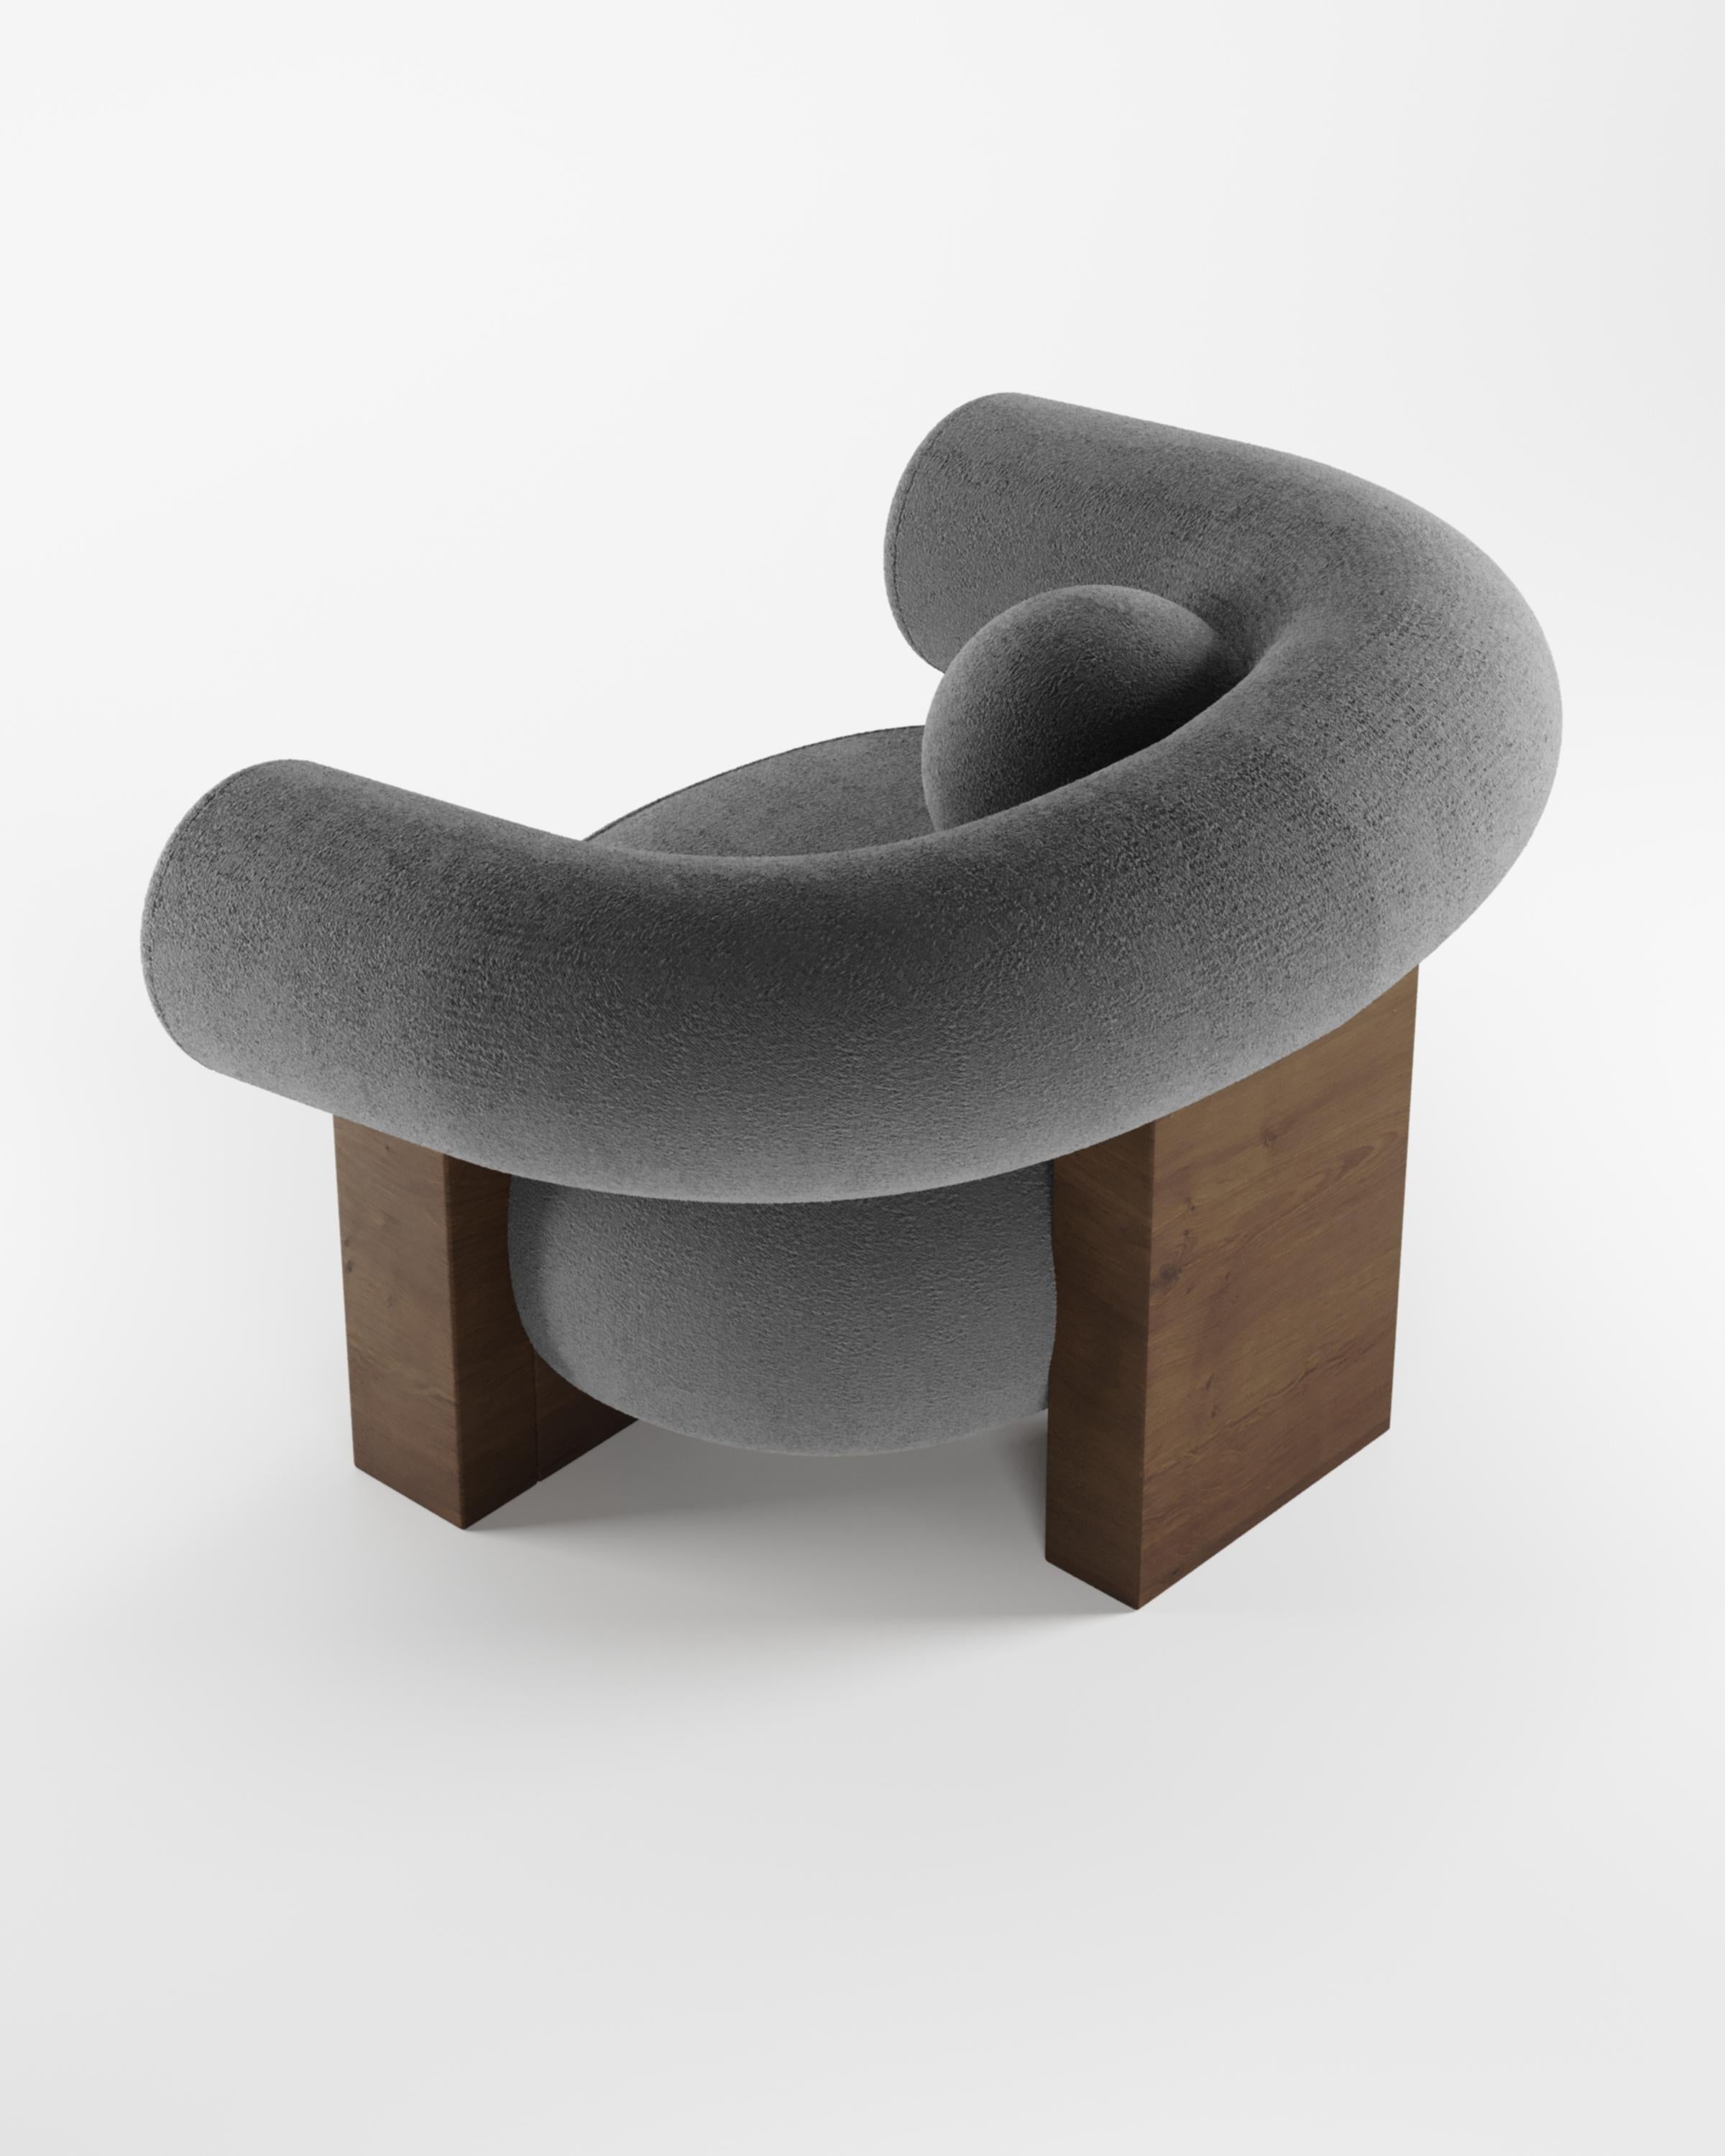 Der Sessel Cassete wurde von Alter Ego für Collector entworfen.

Untermauert von einer minimalistischen und raffinierten Ästhetik mit klaren Linien.

Abmessungen
B 110 cm 43